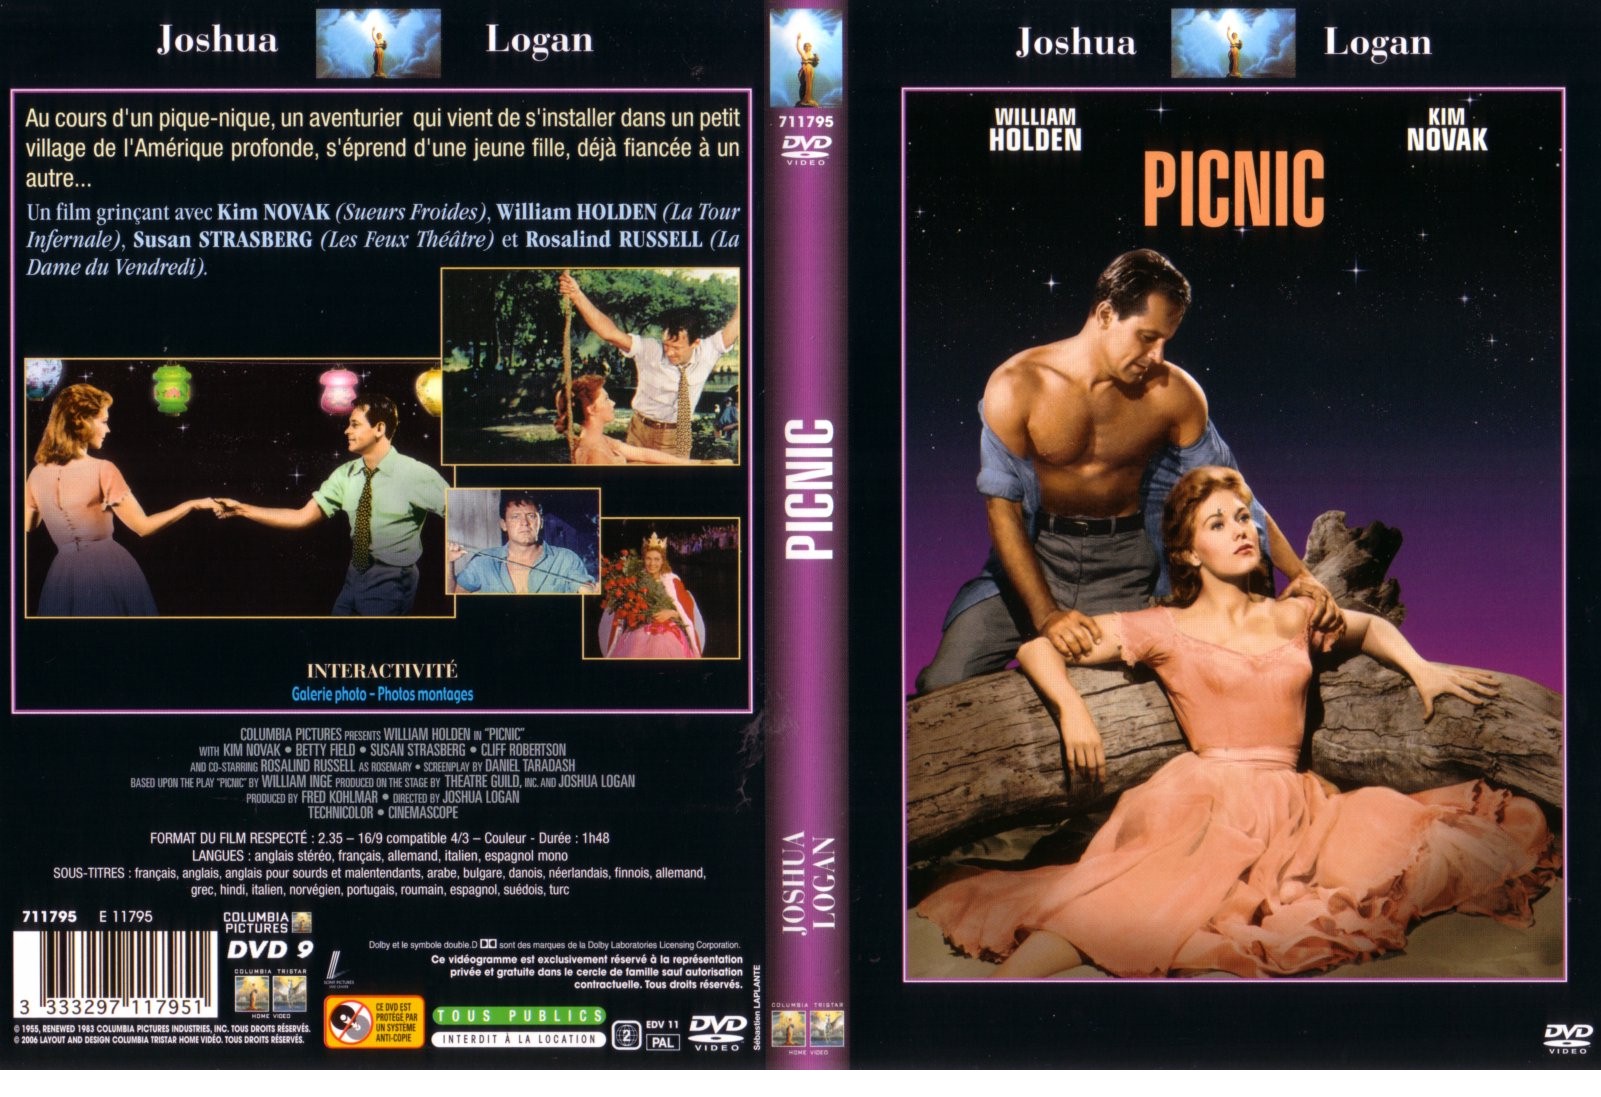 Jaquette DVD Picnic